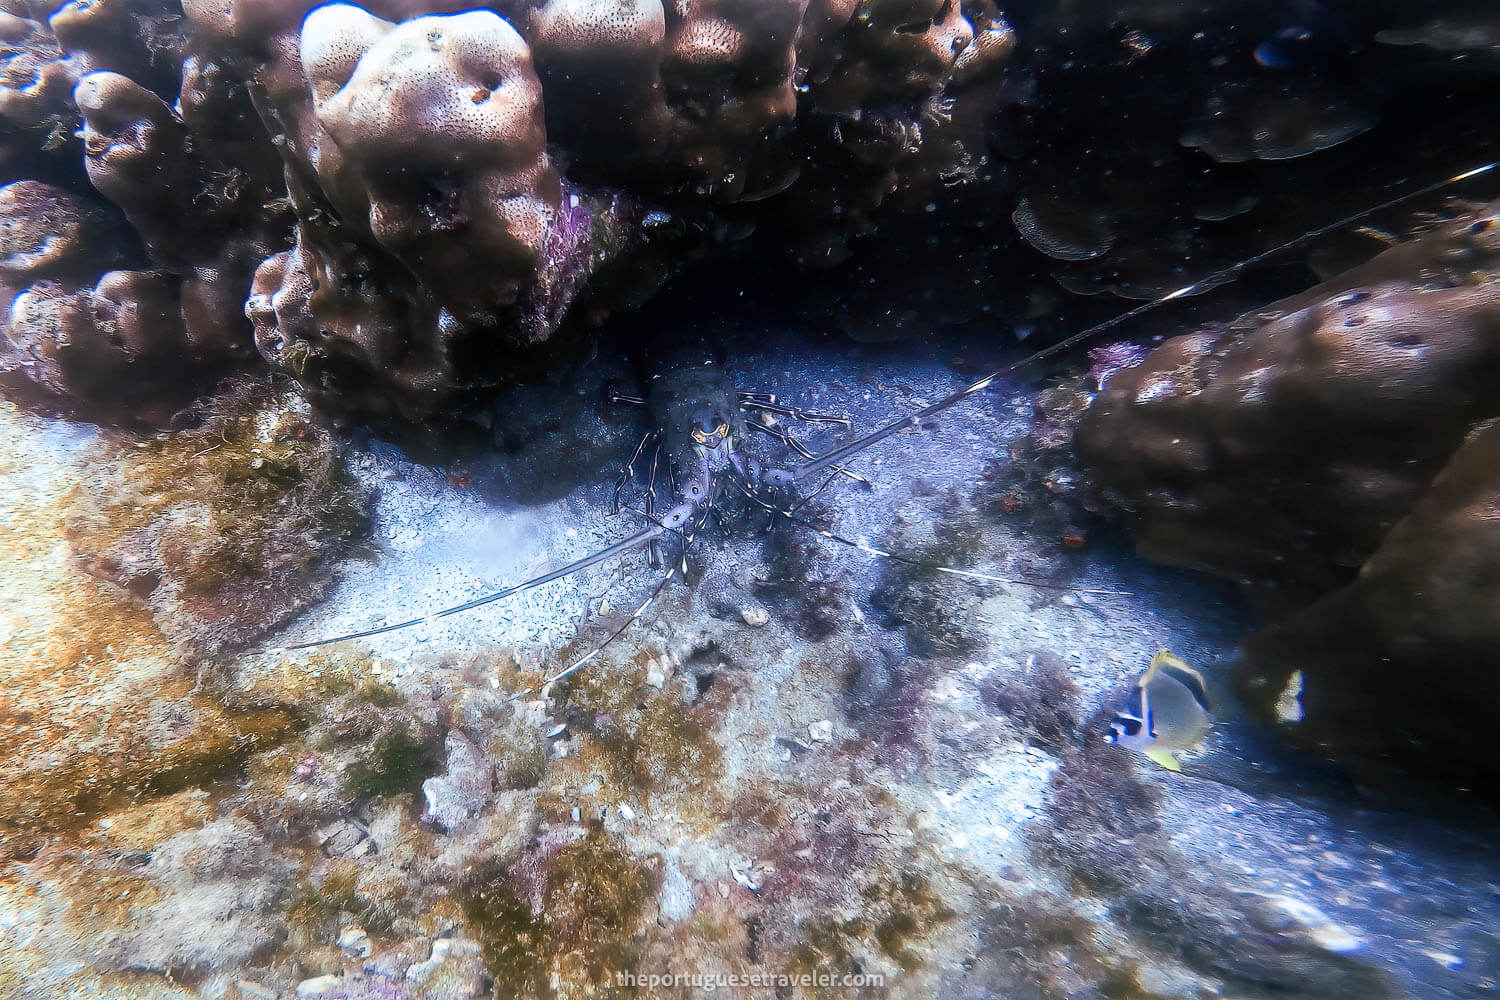 A Lobster on the El Acuario dive